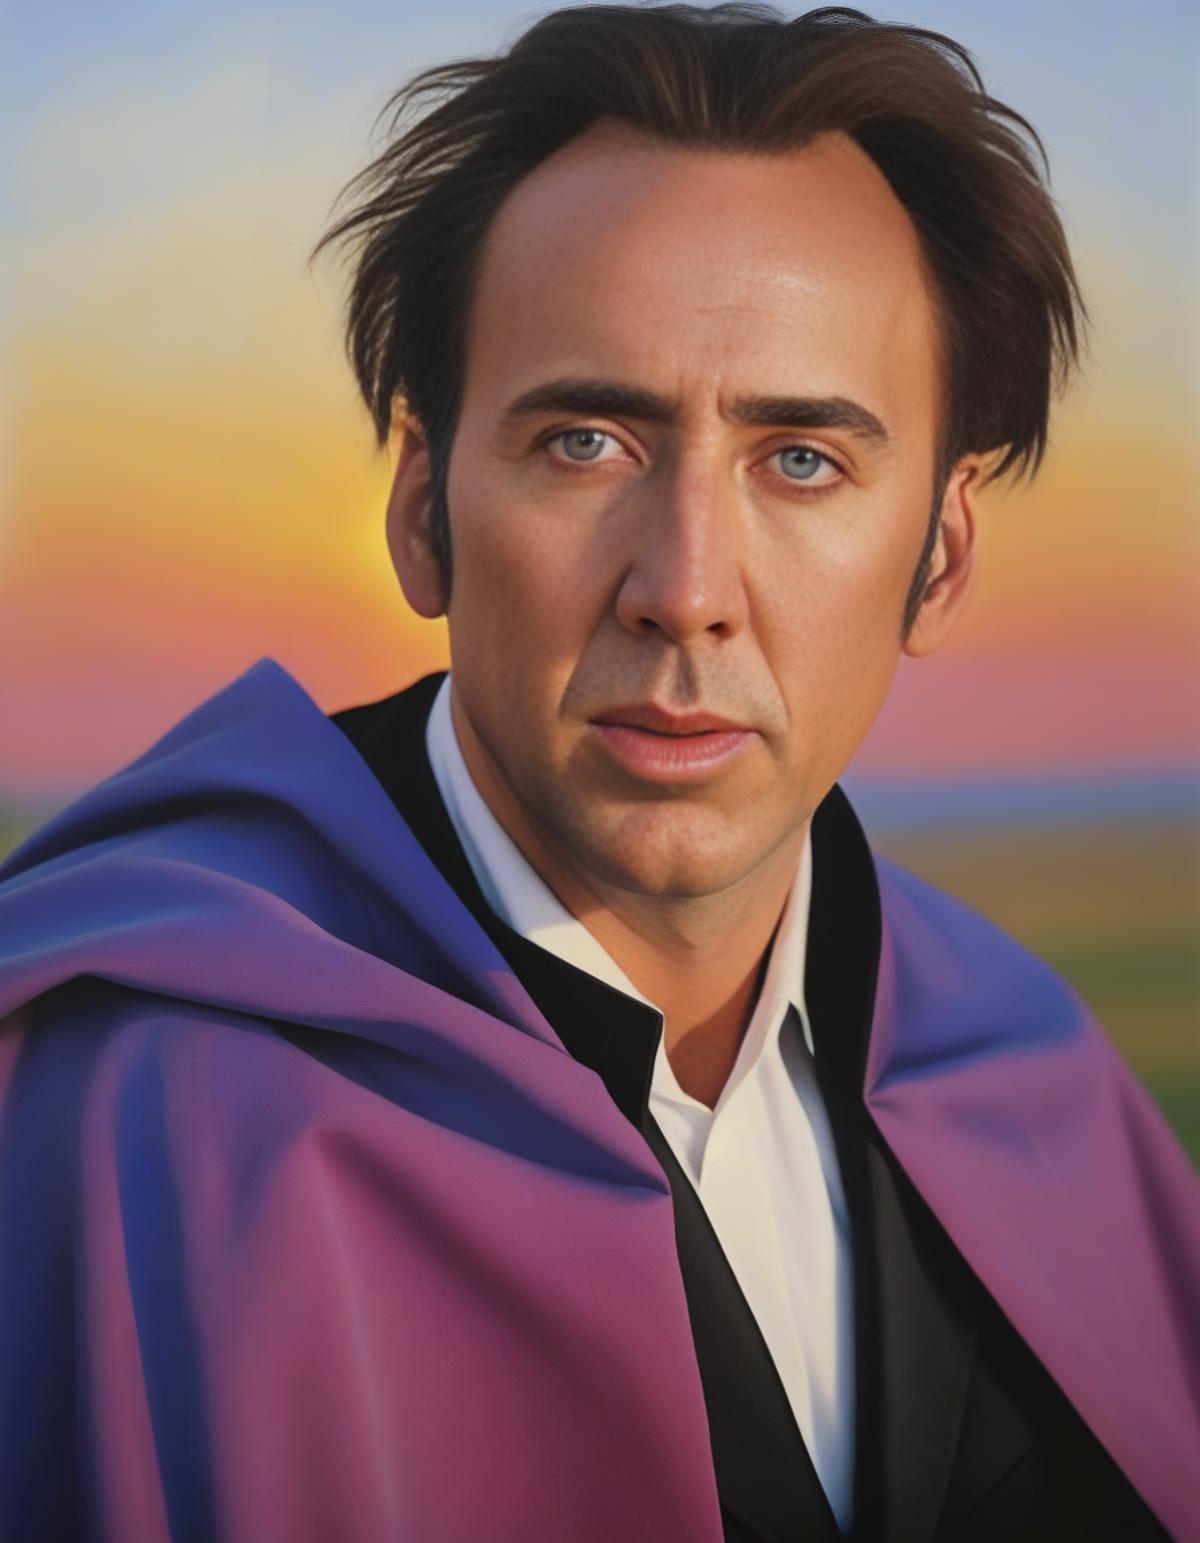 Nicolas Cage SDXL LoRA (Made by parar20) image by MassBrainImpact